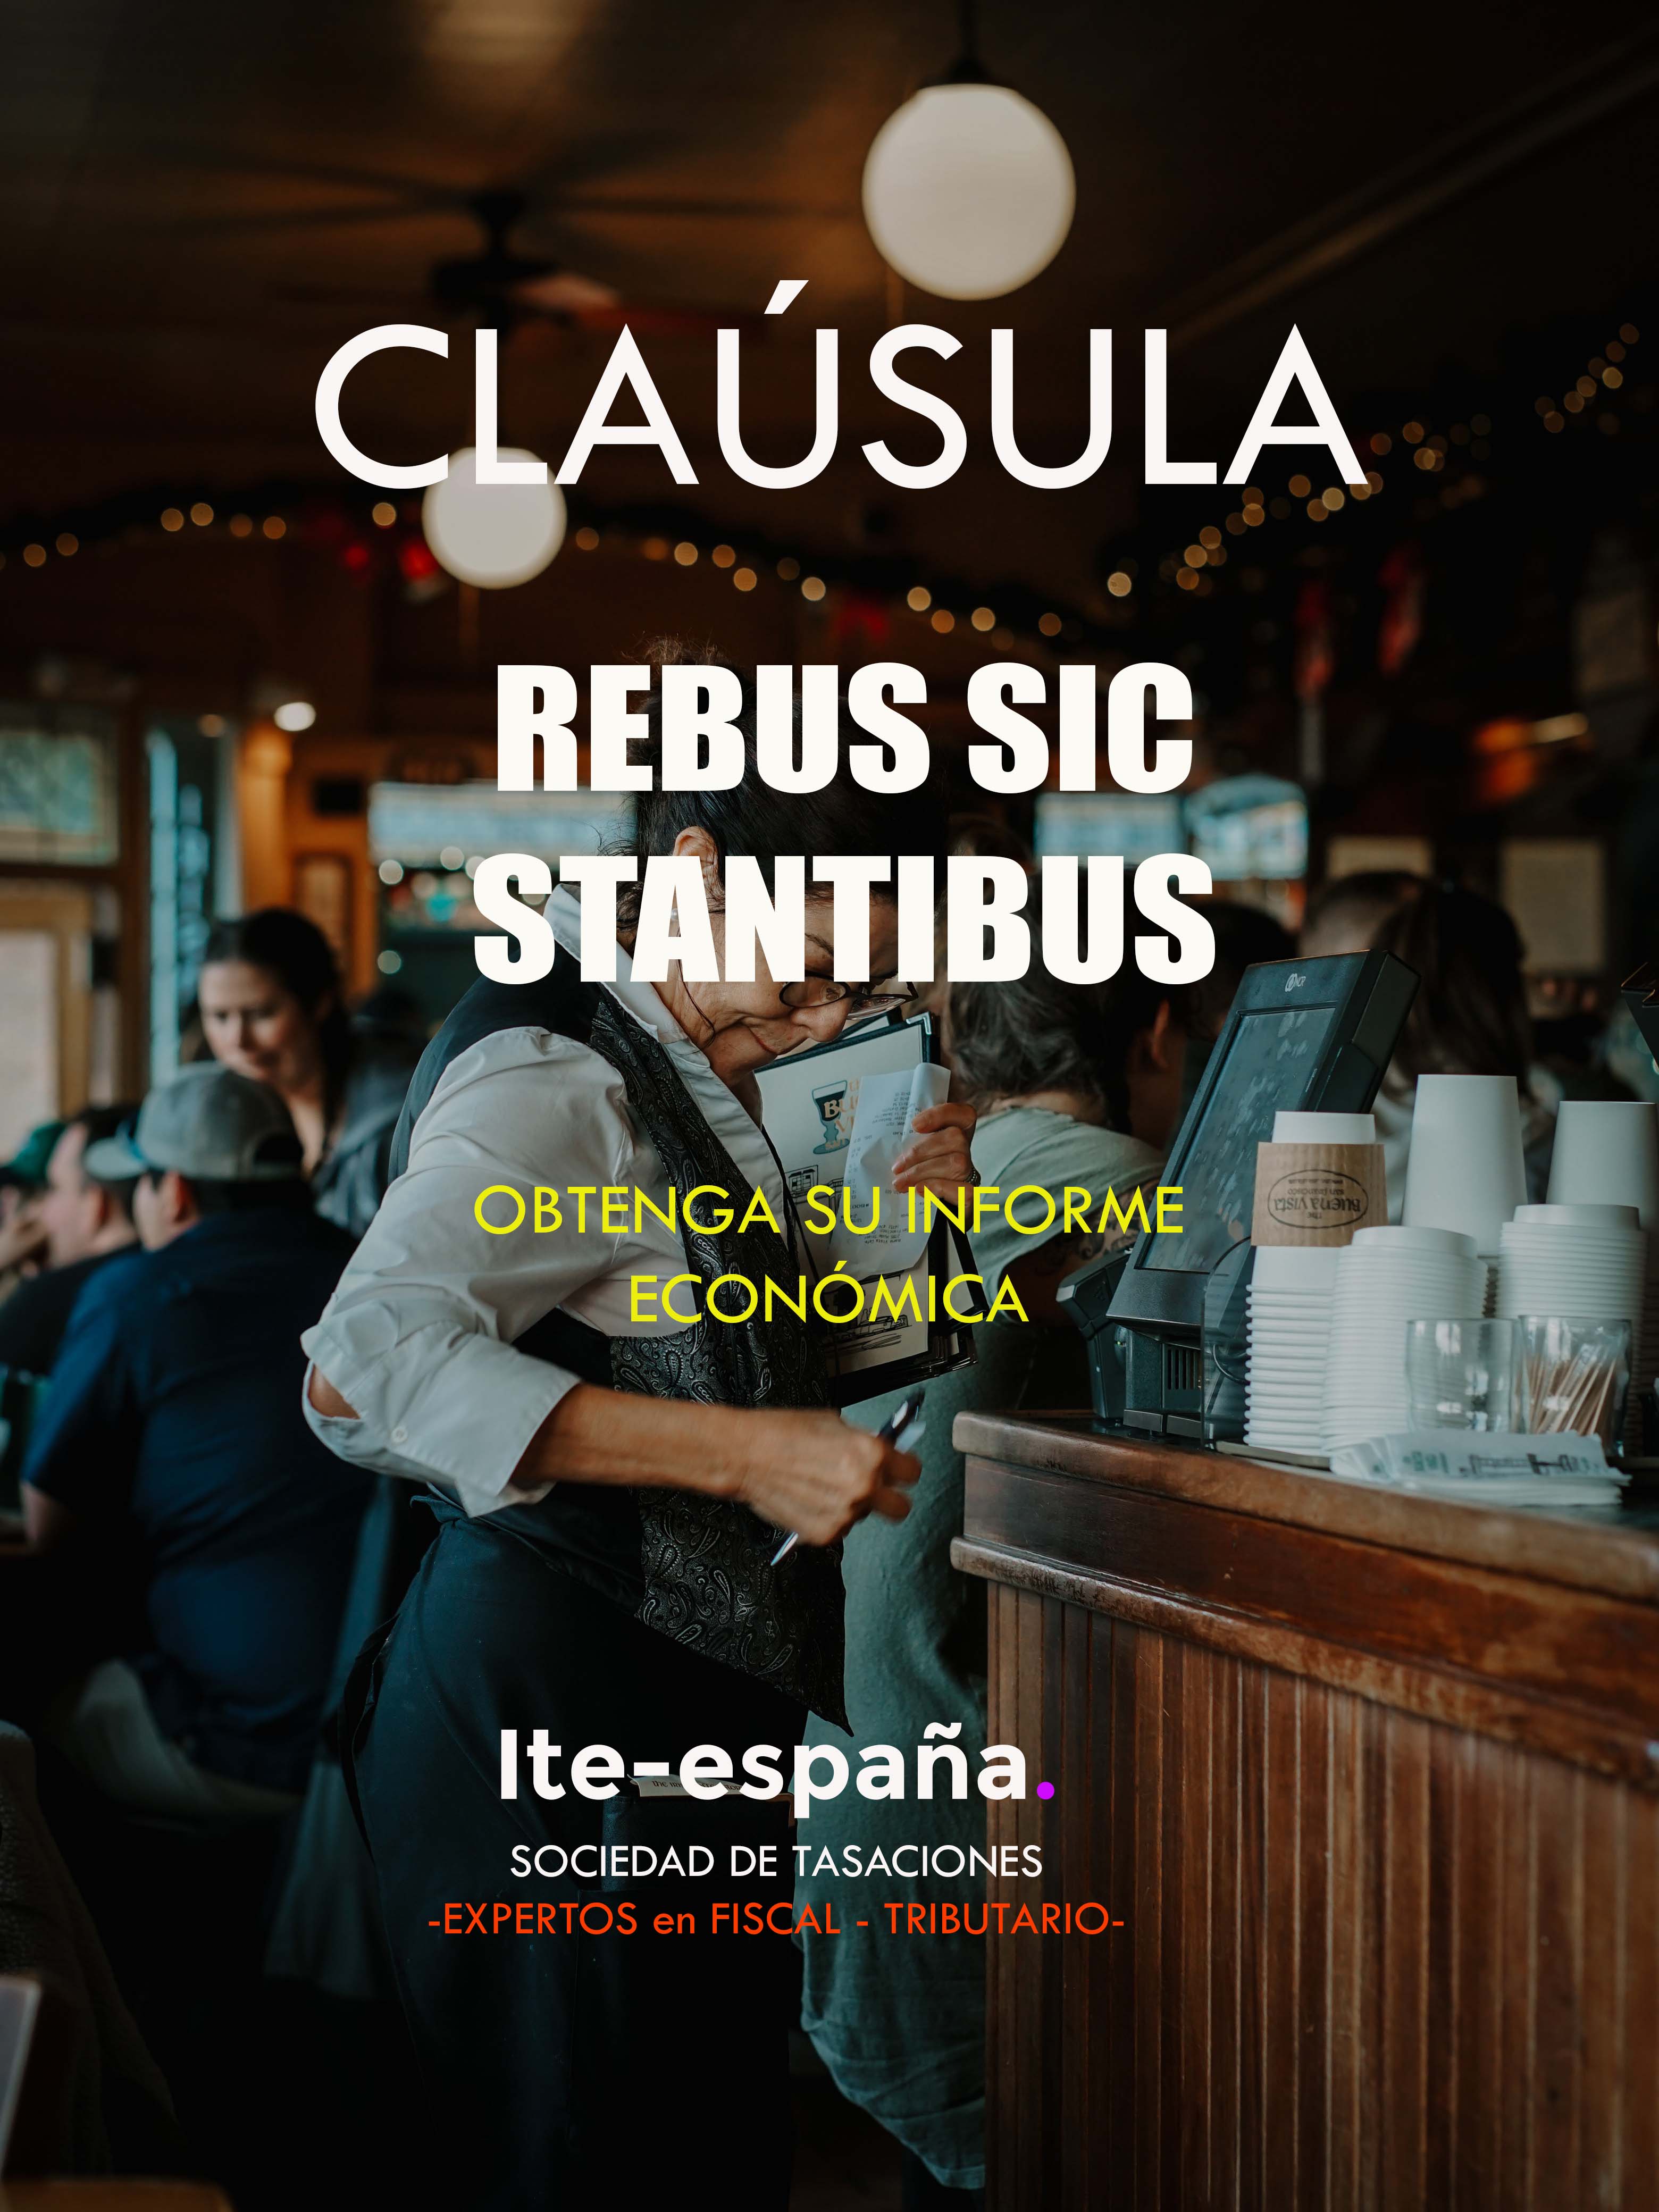 CLAUSULA REBUS SIC STANTIBUS